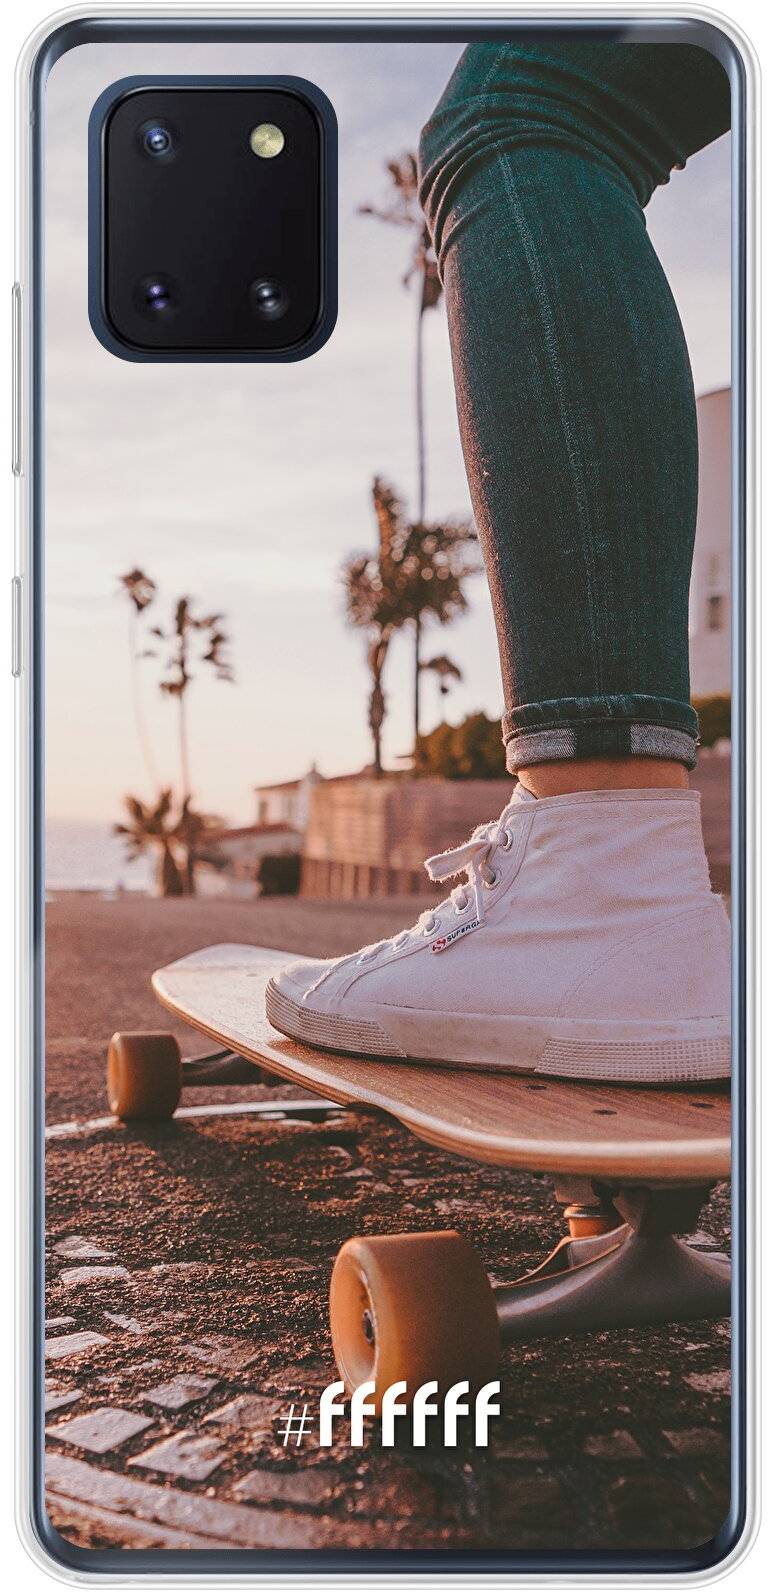 Skateboarding Galaxy Note 10 Lite